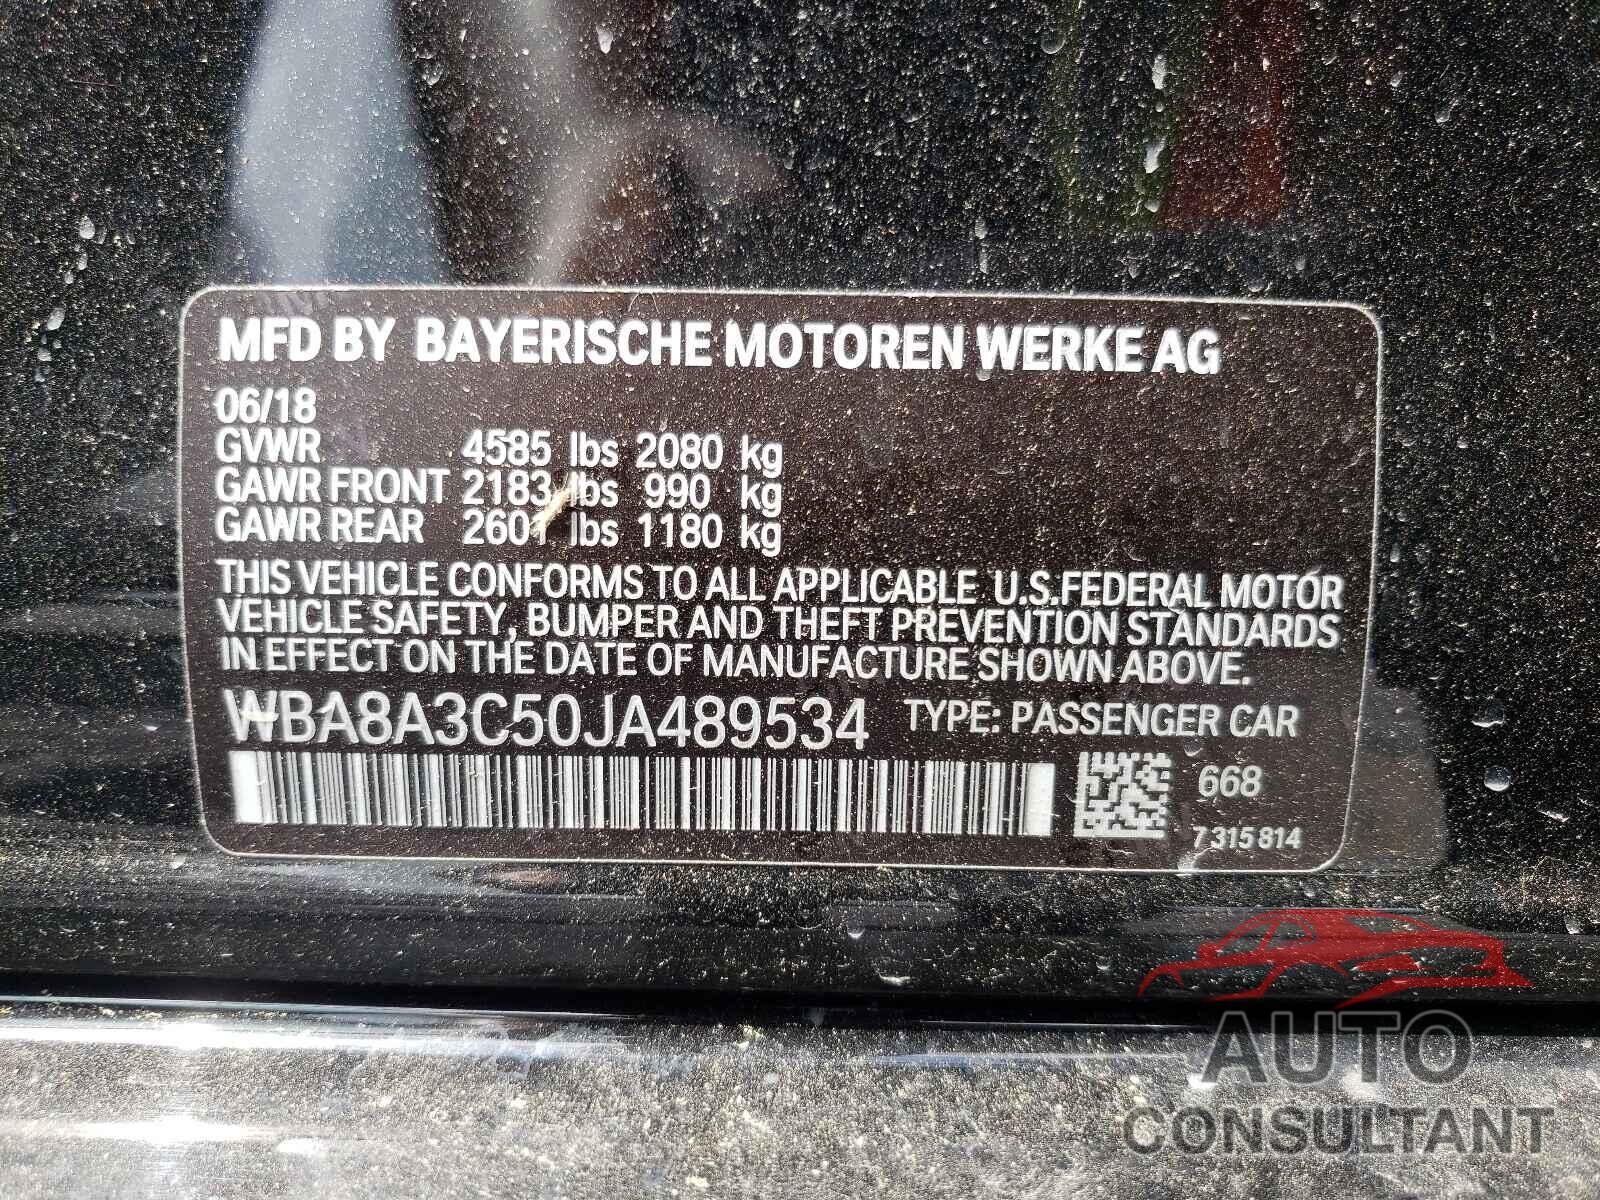 BMW 3 SERIES 2018 - WBA8A3C50JA489534